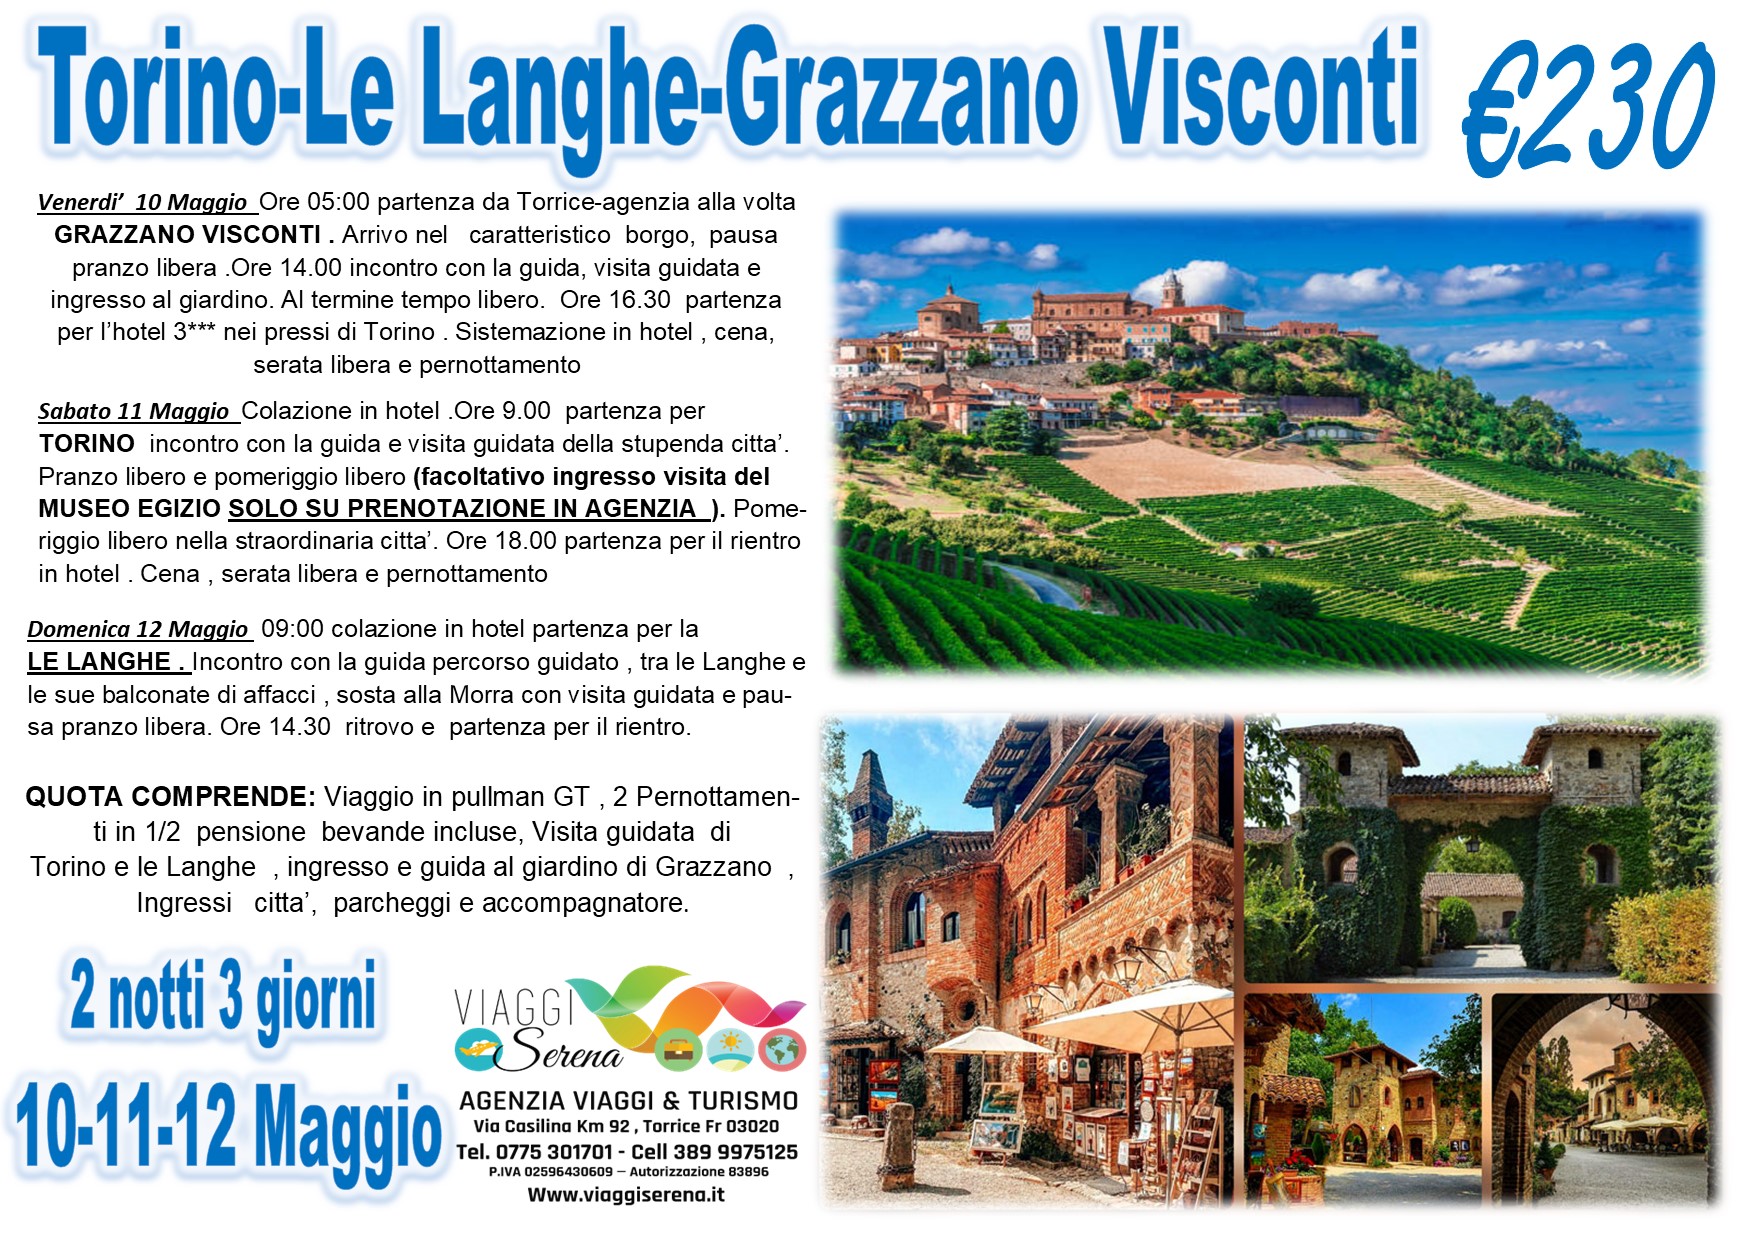 Viaggi di gruppo: Torino , Grazzano Visconti & Le Langhe 11-12-13 Maggio €230,00